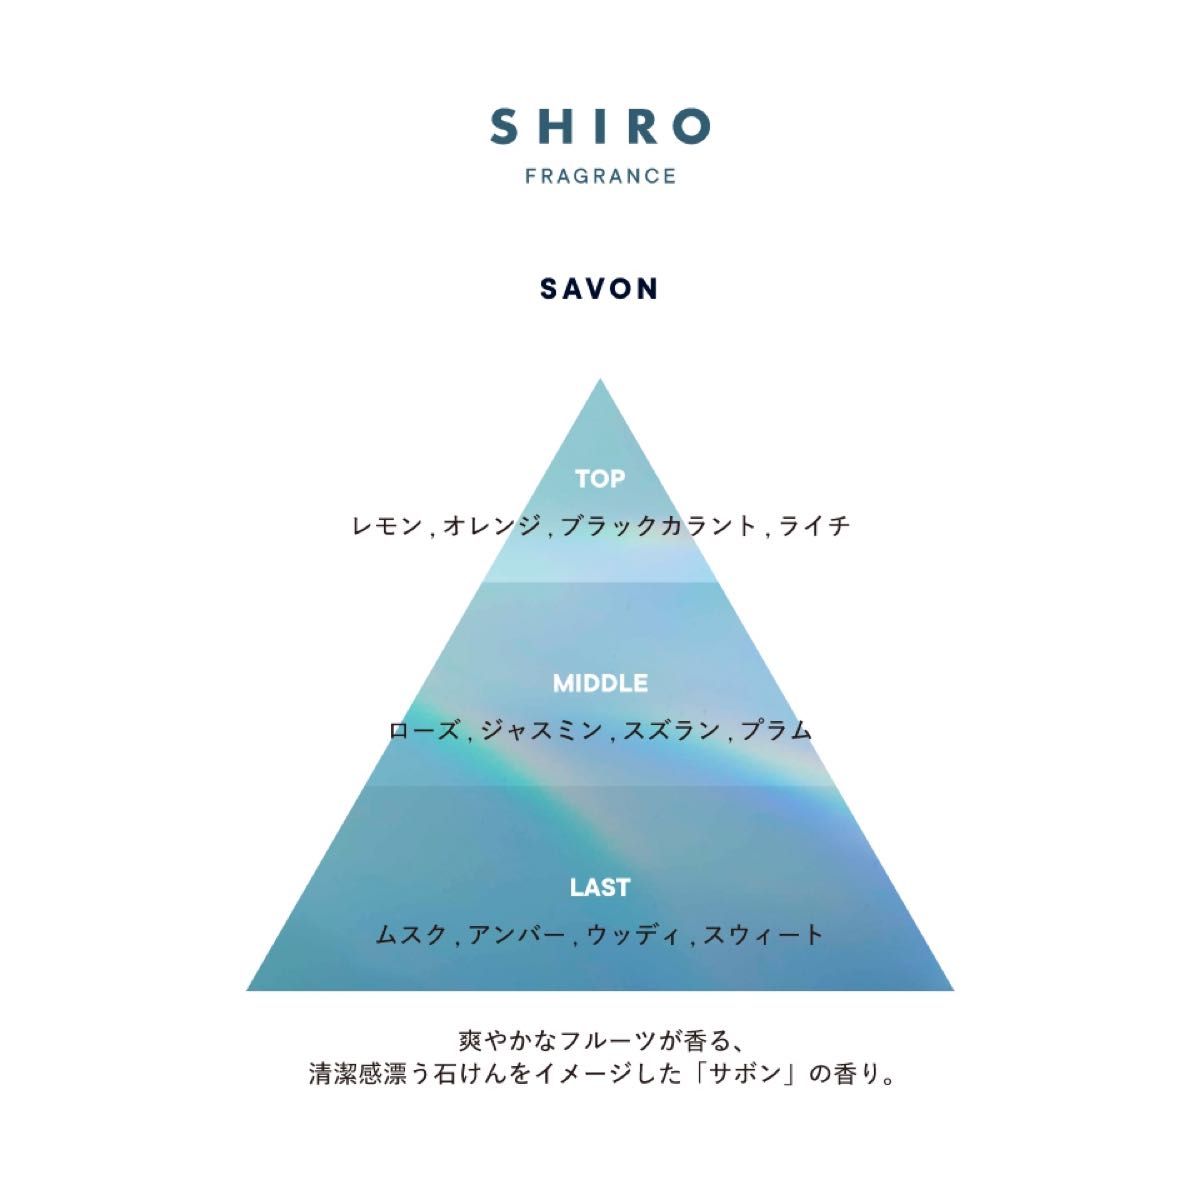 SHIRO シロ サボン オードパルファン アトマイザー 1.5mL